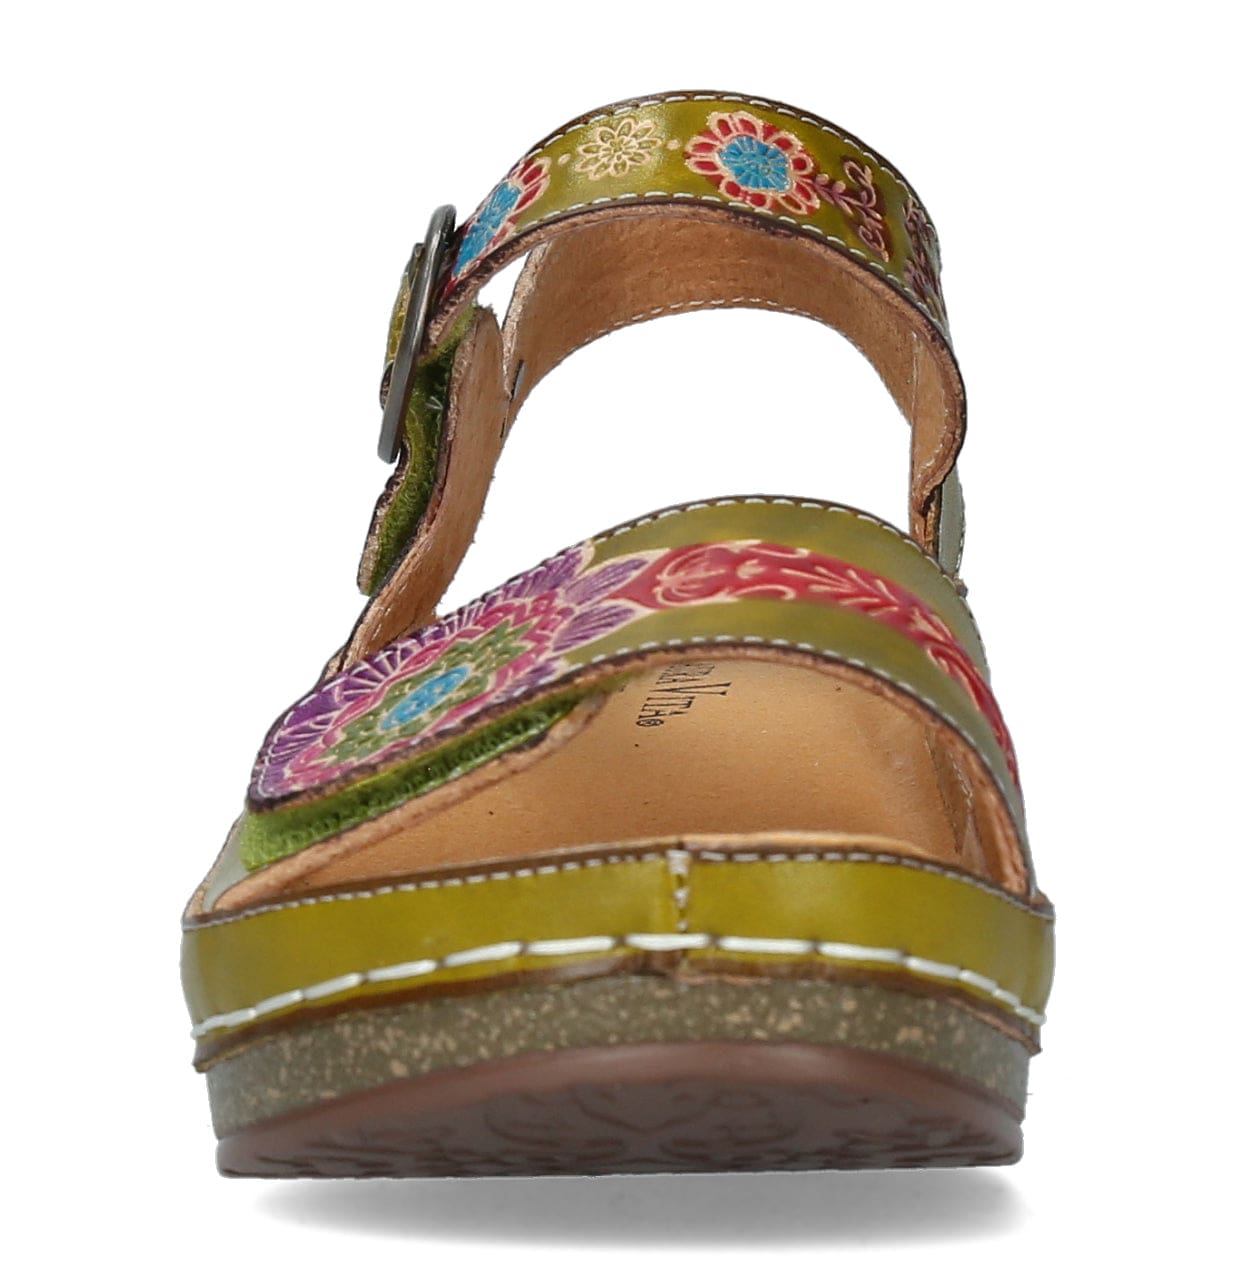 Chaussures FACSCINEO 0122 Fleur - Sandale